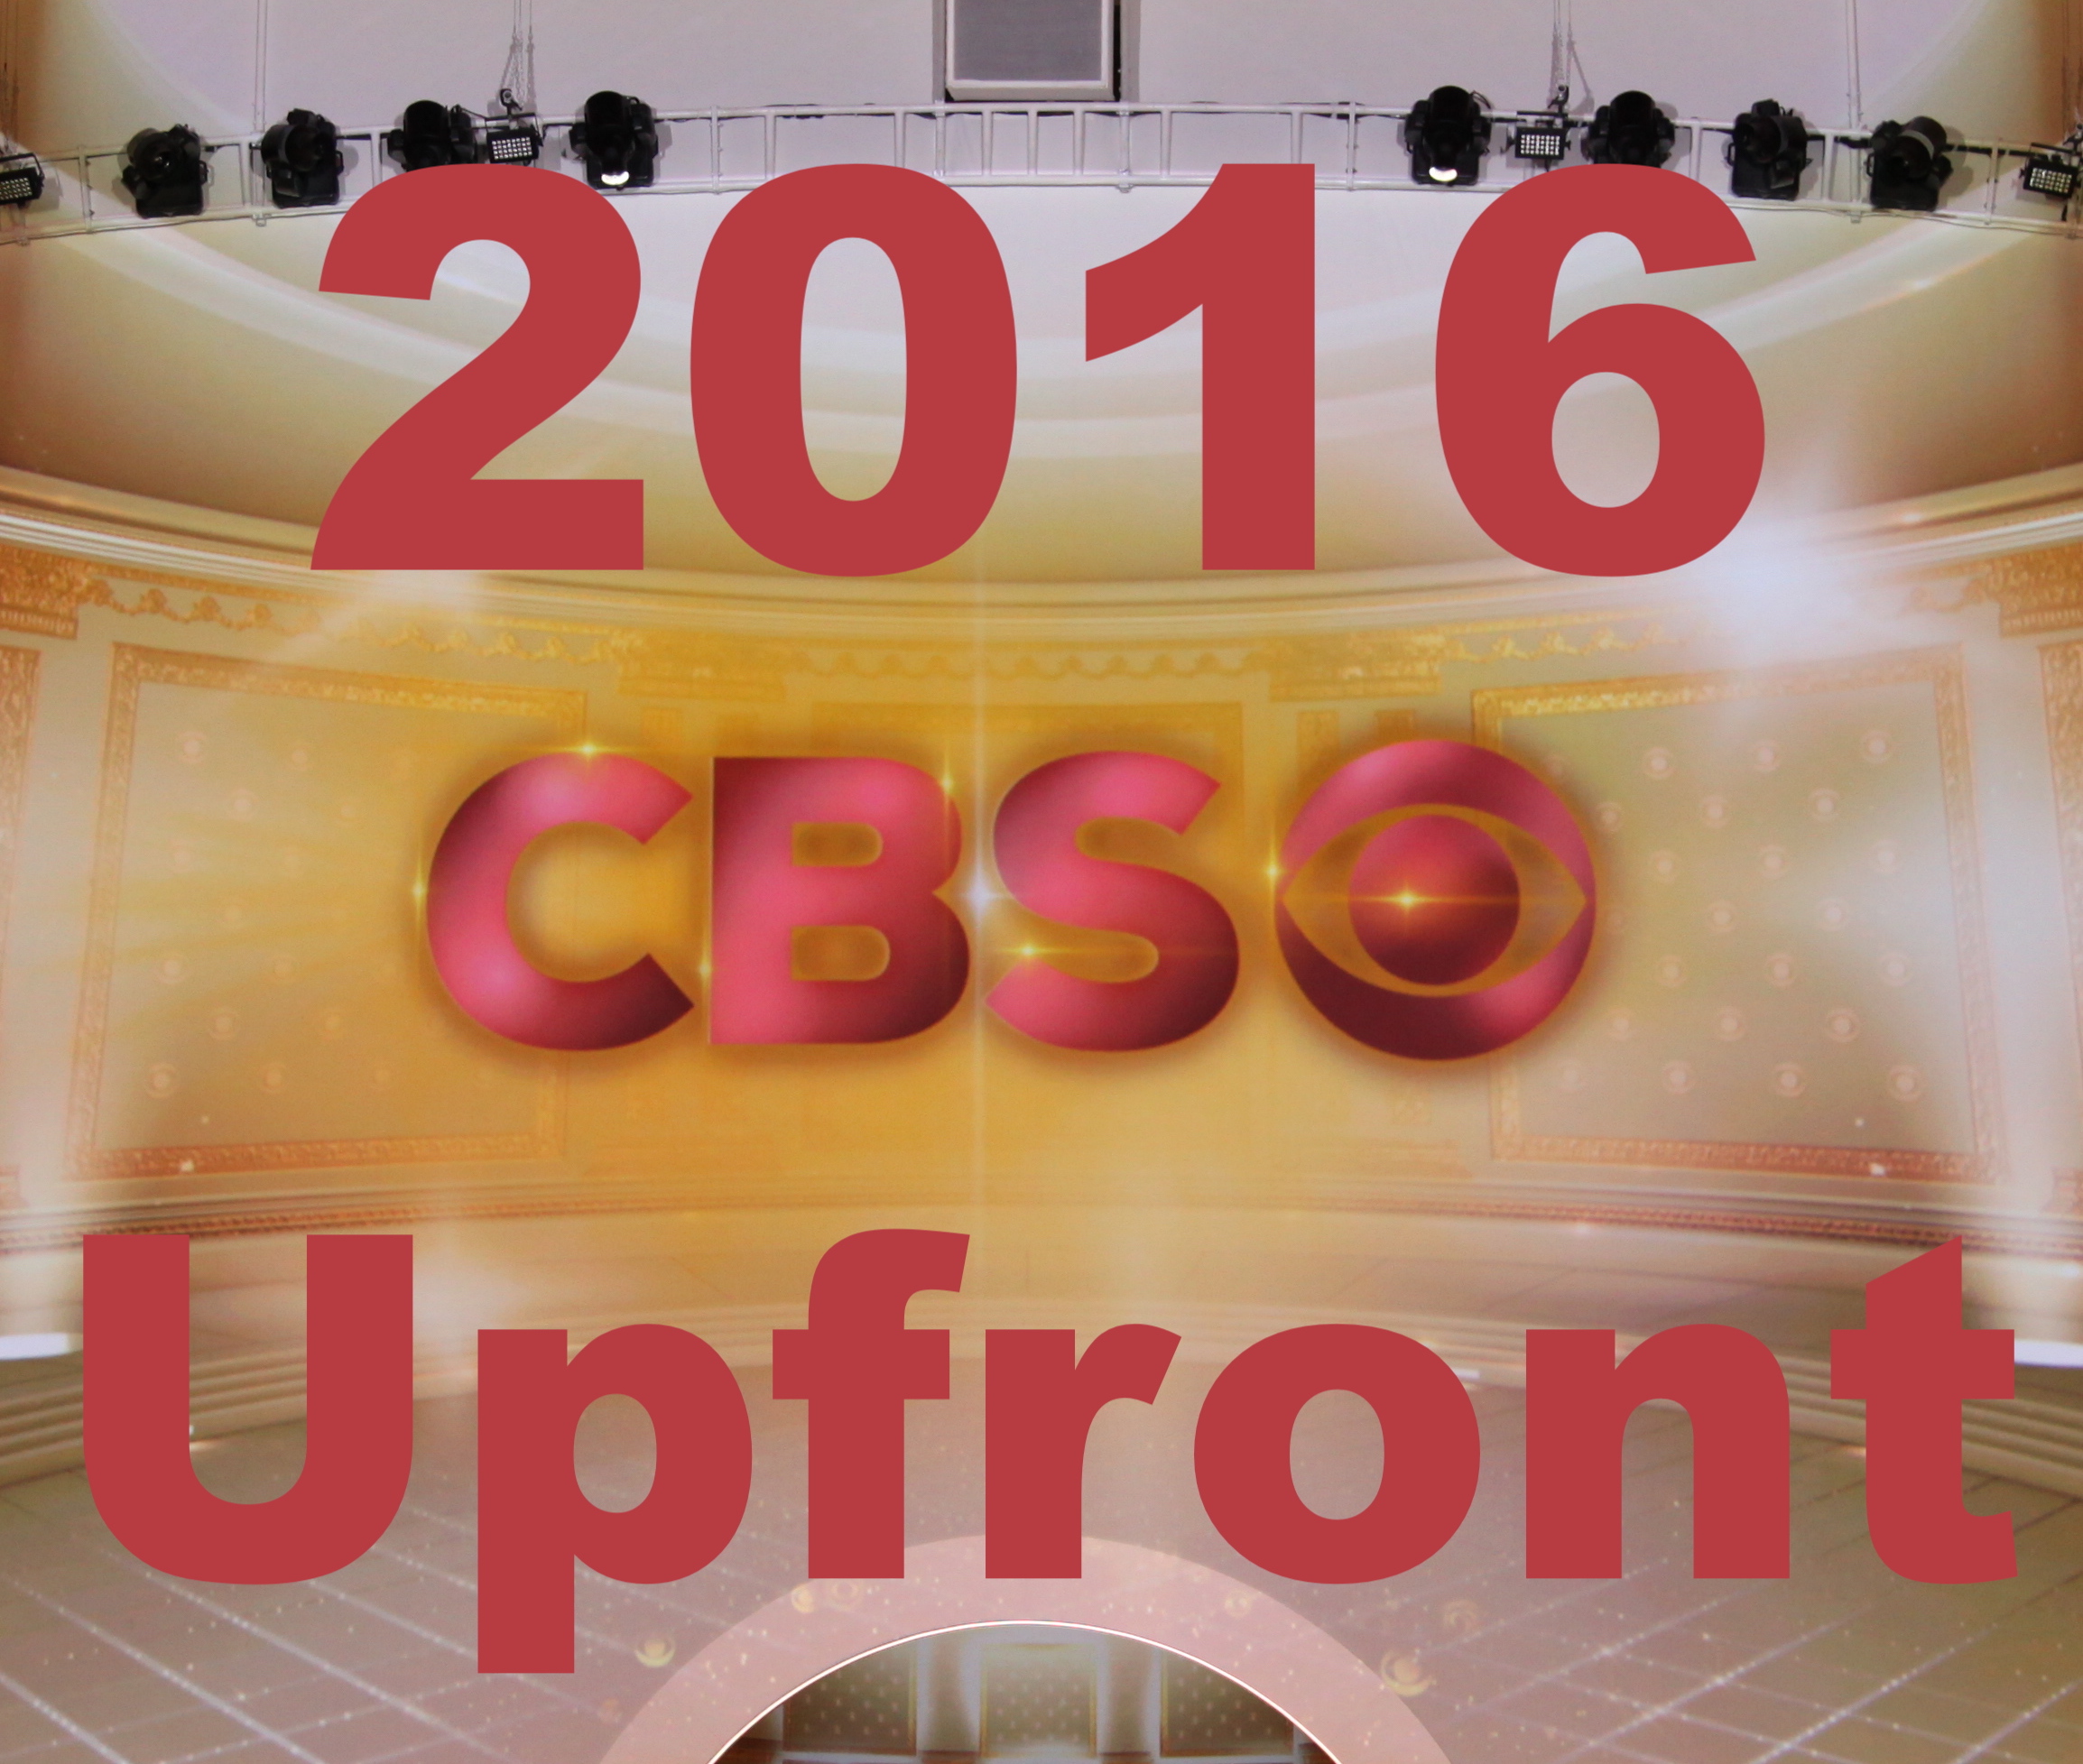 2016 CBS Upfront